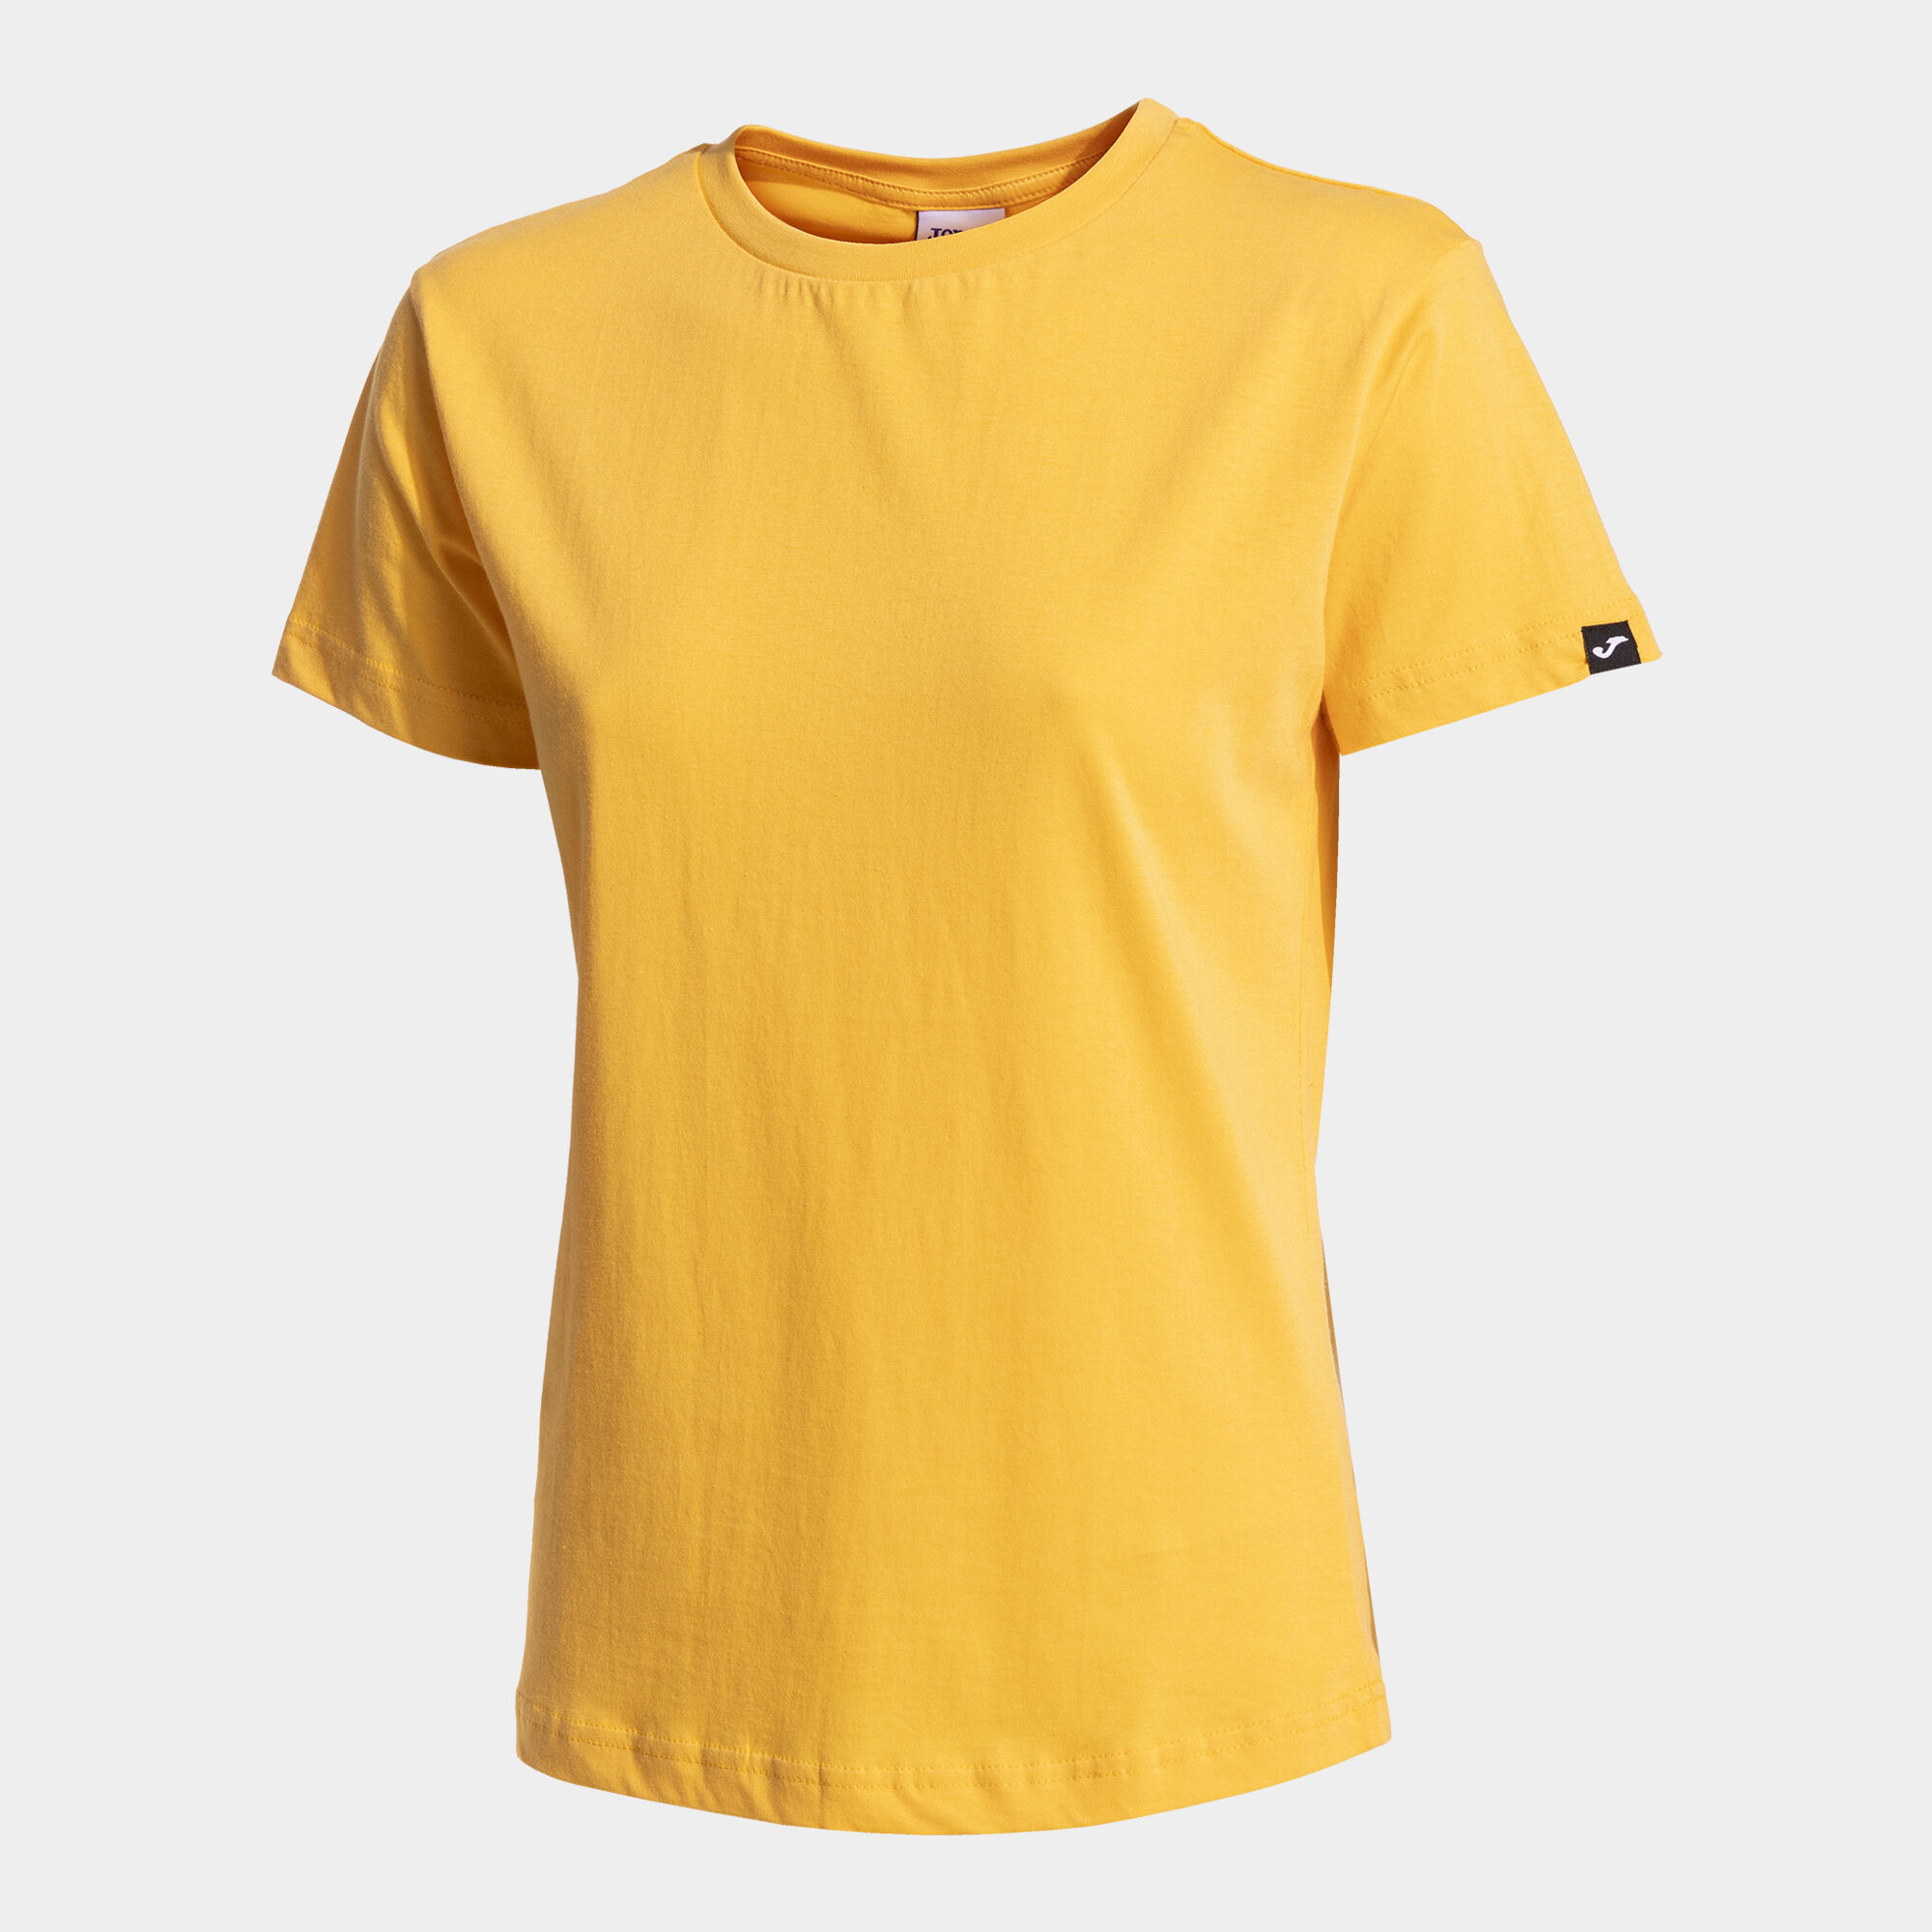 Camiseta manga corta mujer Desert naranja